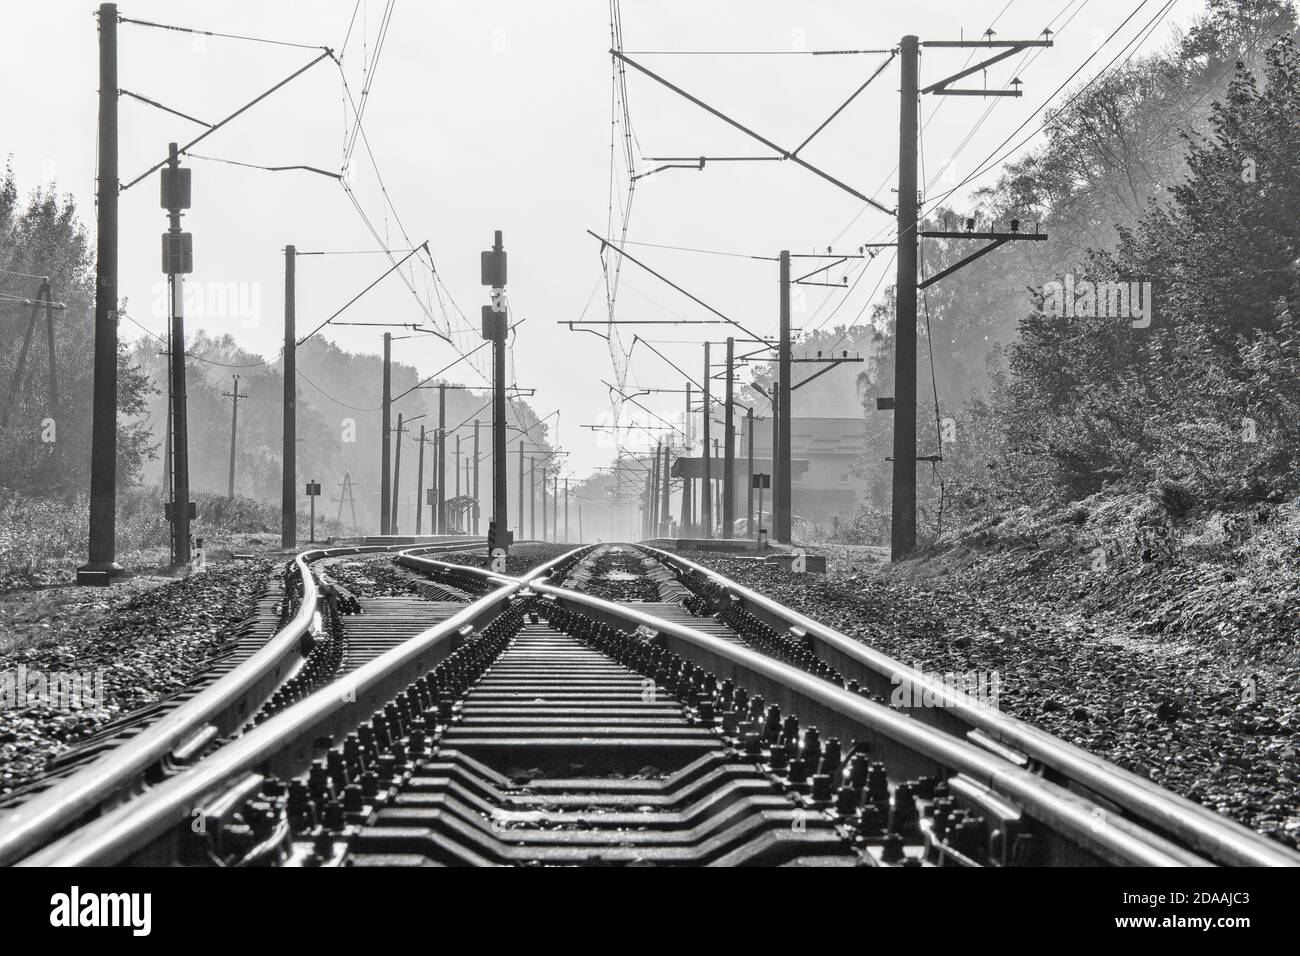 Zwei Bahngleise mit Strommasten und Kabeln in der Nähe des Bahnhofs eines kleinen Townships. Schwarzweiß-Foto Stockfoto